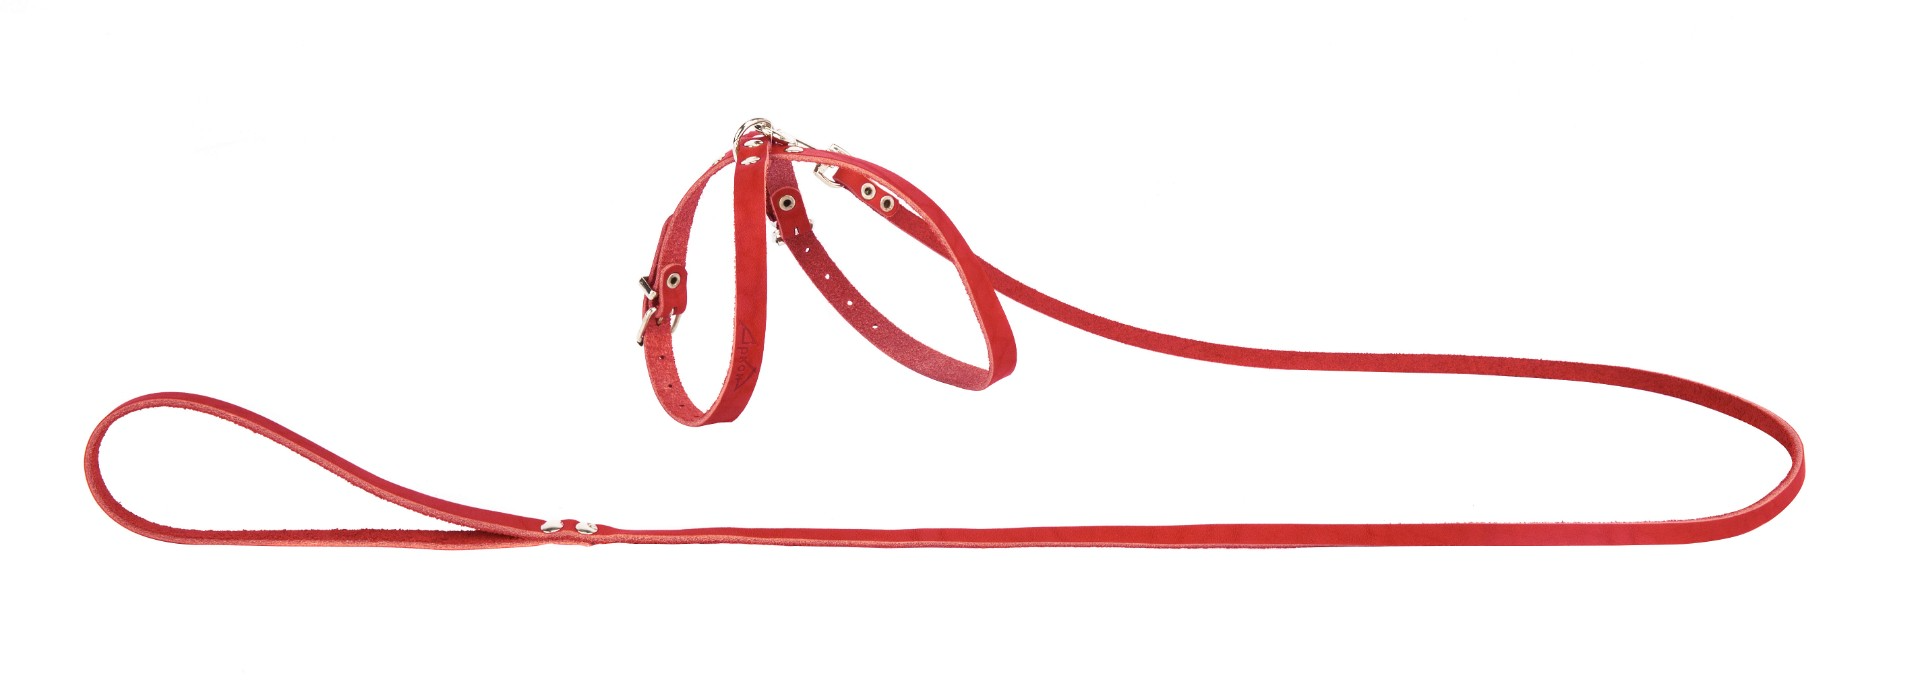 Комплект аркон кожаный для кошек и собак мелких пород №8 однослойный поводок + шлейка красный (120 см/7 мм)